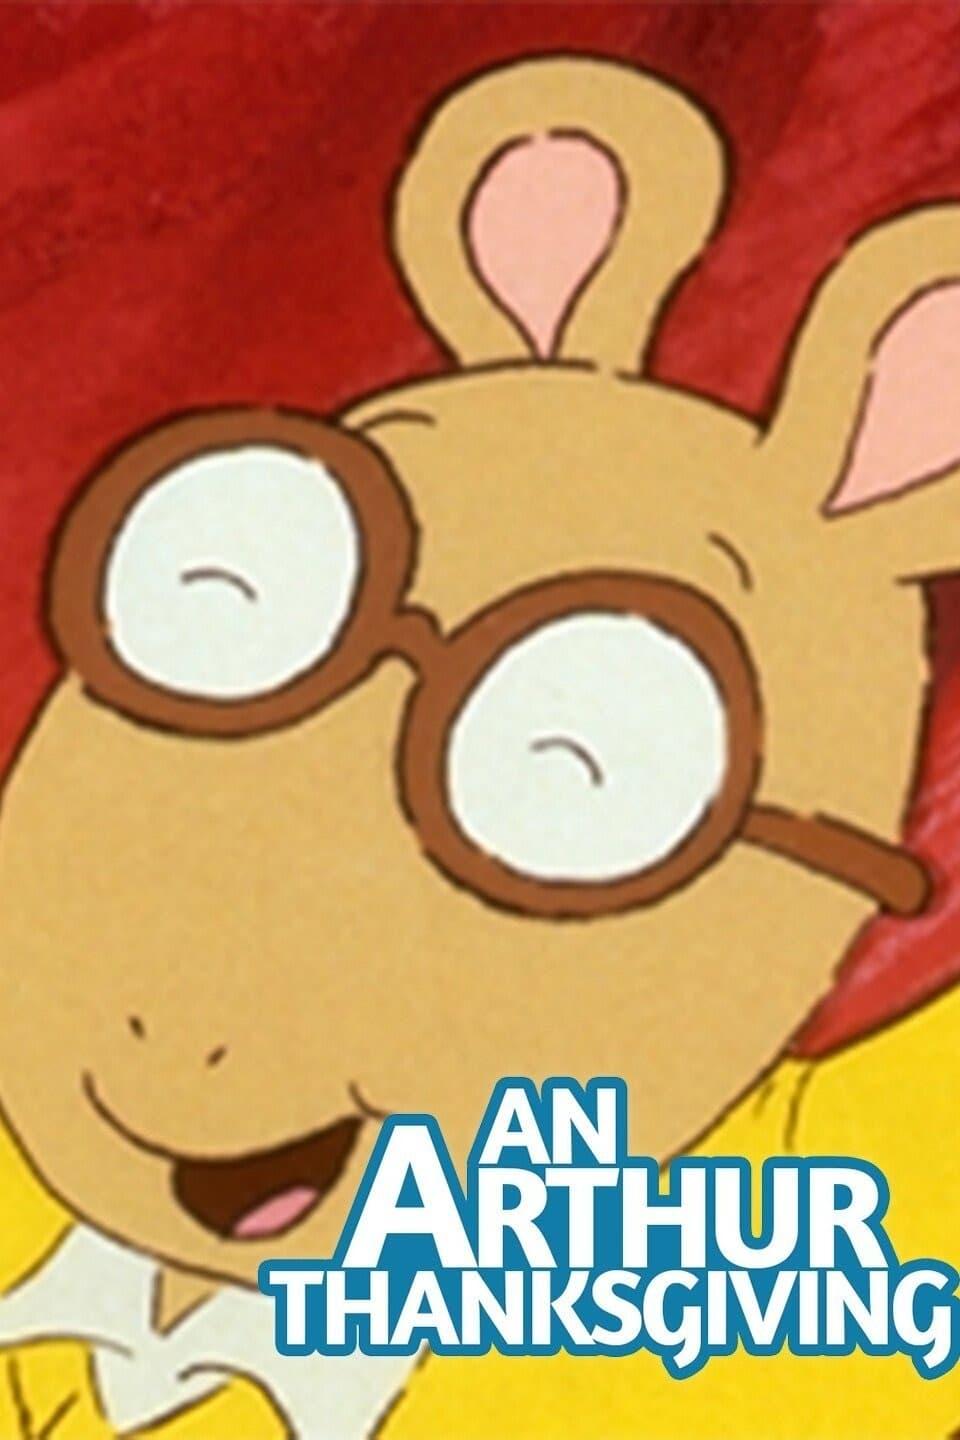 An Arthur Thanksgiving poster